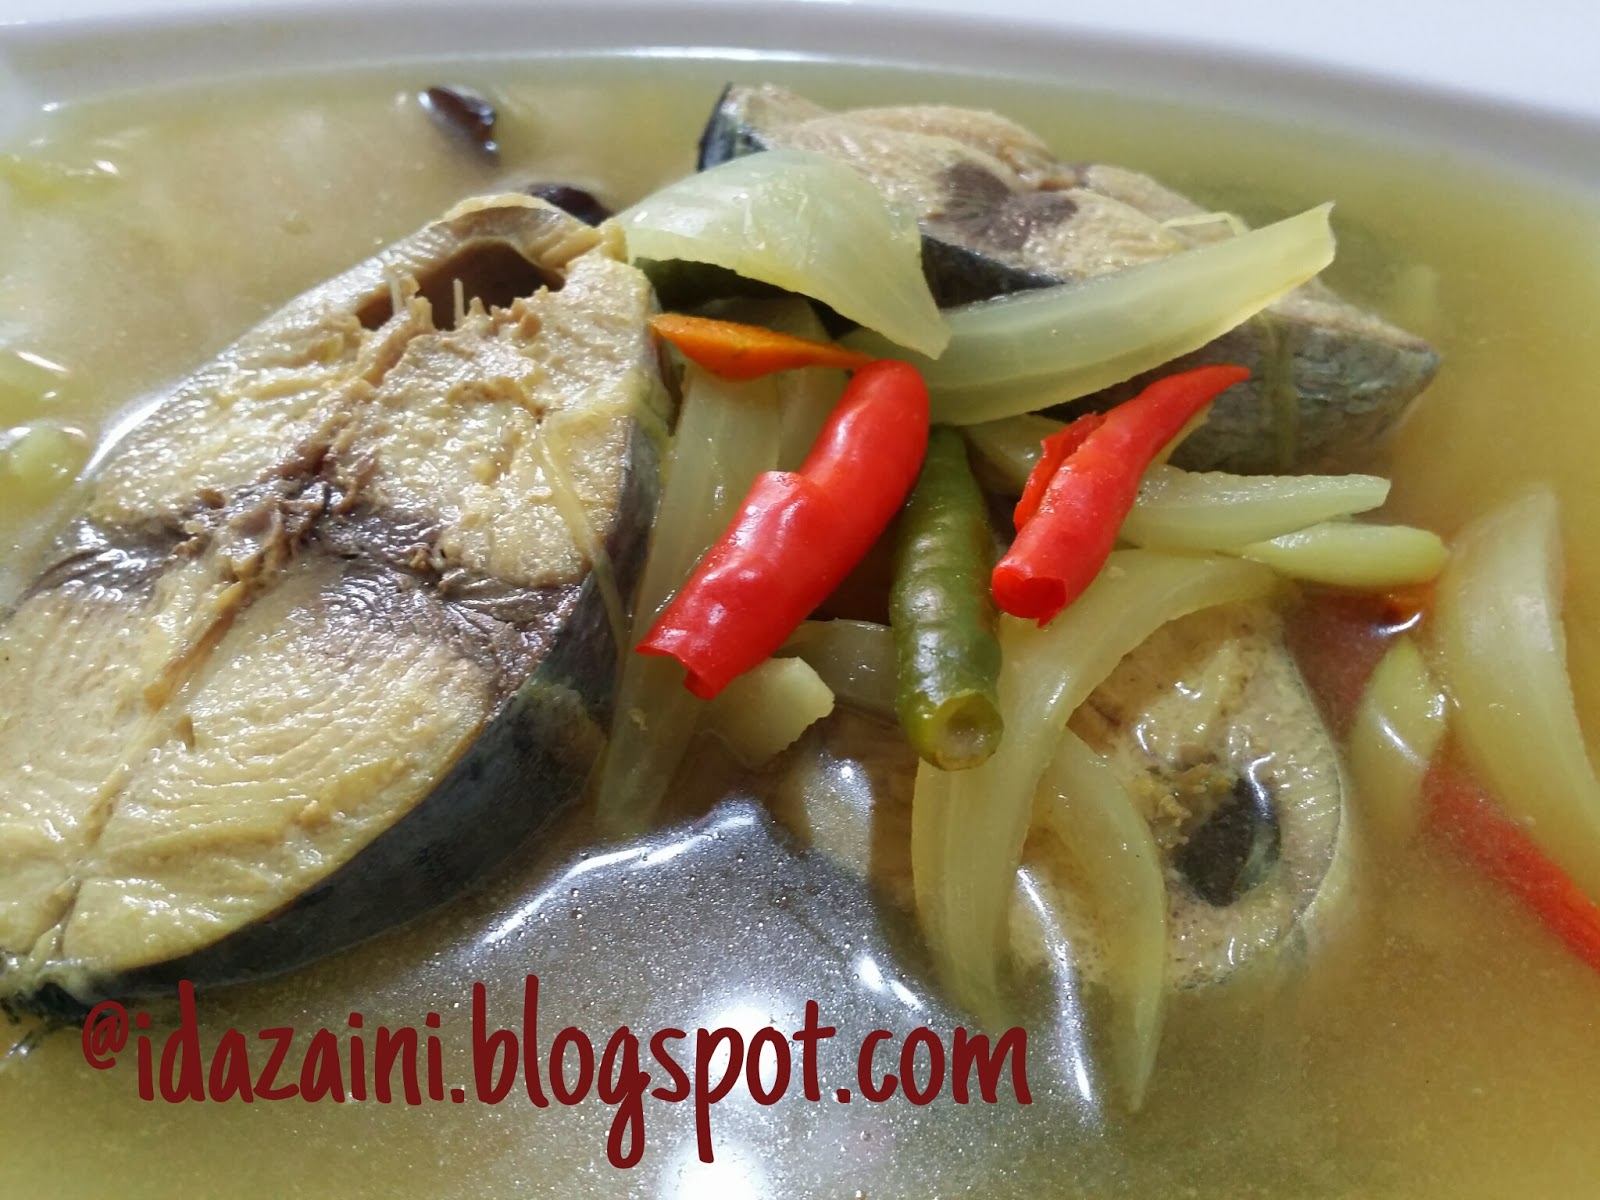 Things I Want To Share: Resepi~ Masak Singgang Ikan Tongkol